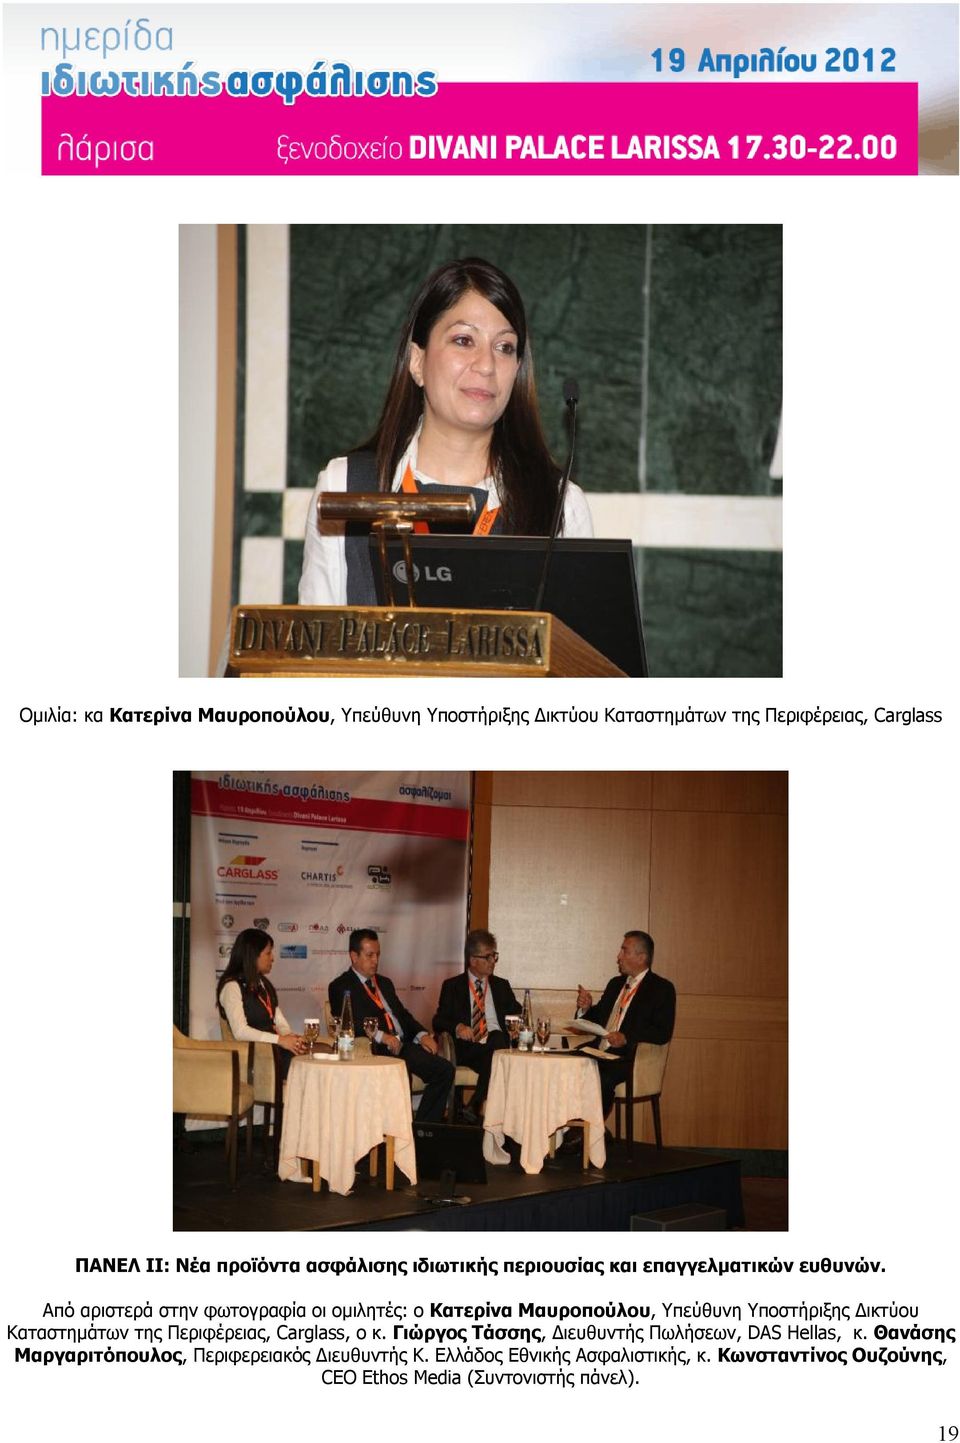 Από αριστερά στην φωτογραφία οι ομιλητές: ο Κατερίνα Μαυροπούλου, Υπεύθυνη Υποστήριξης Δικτύου Καταστημάτων της Περιφέρειας,